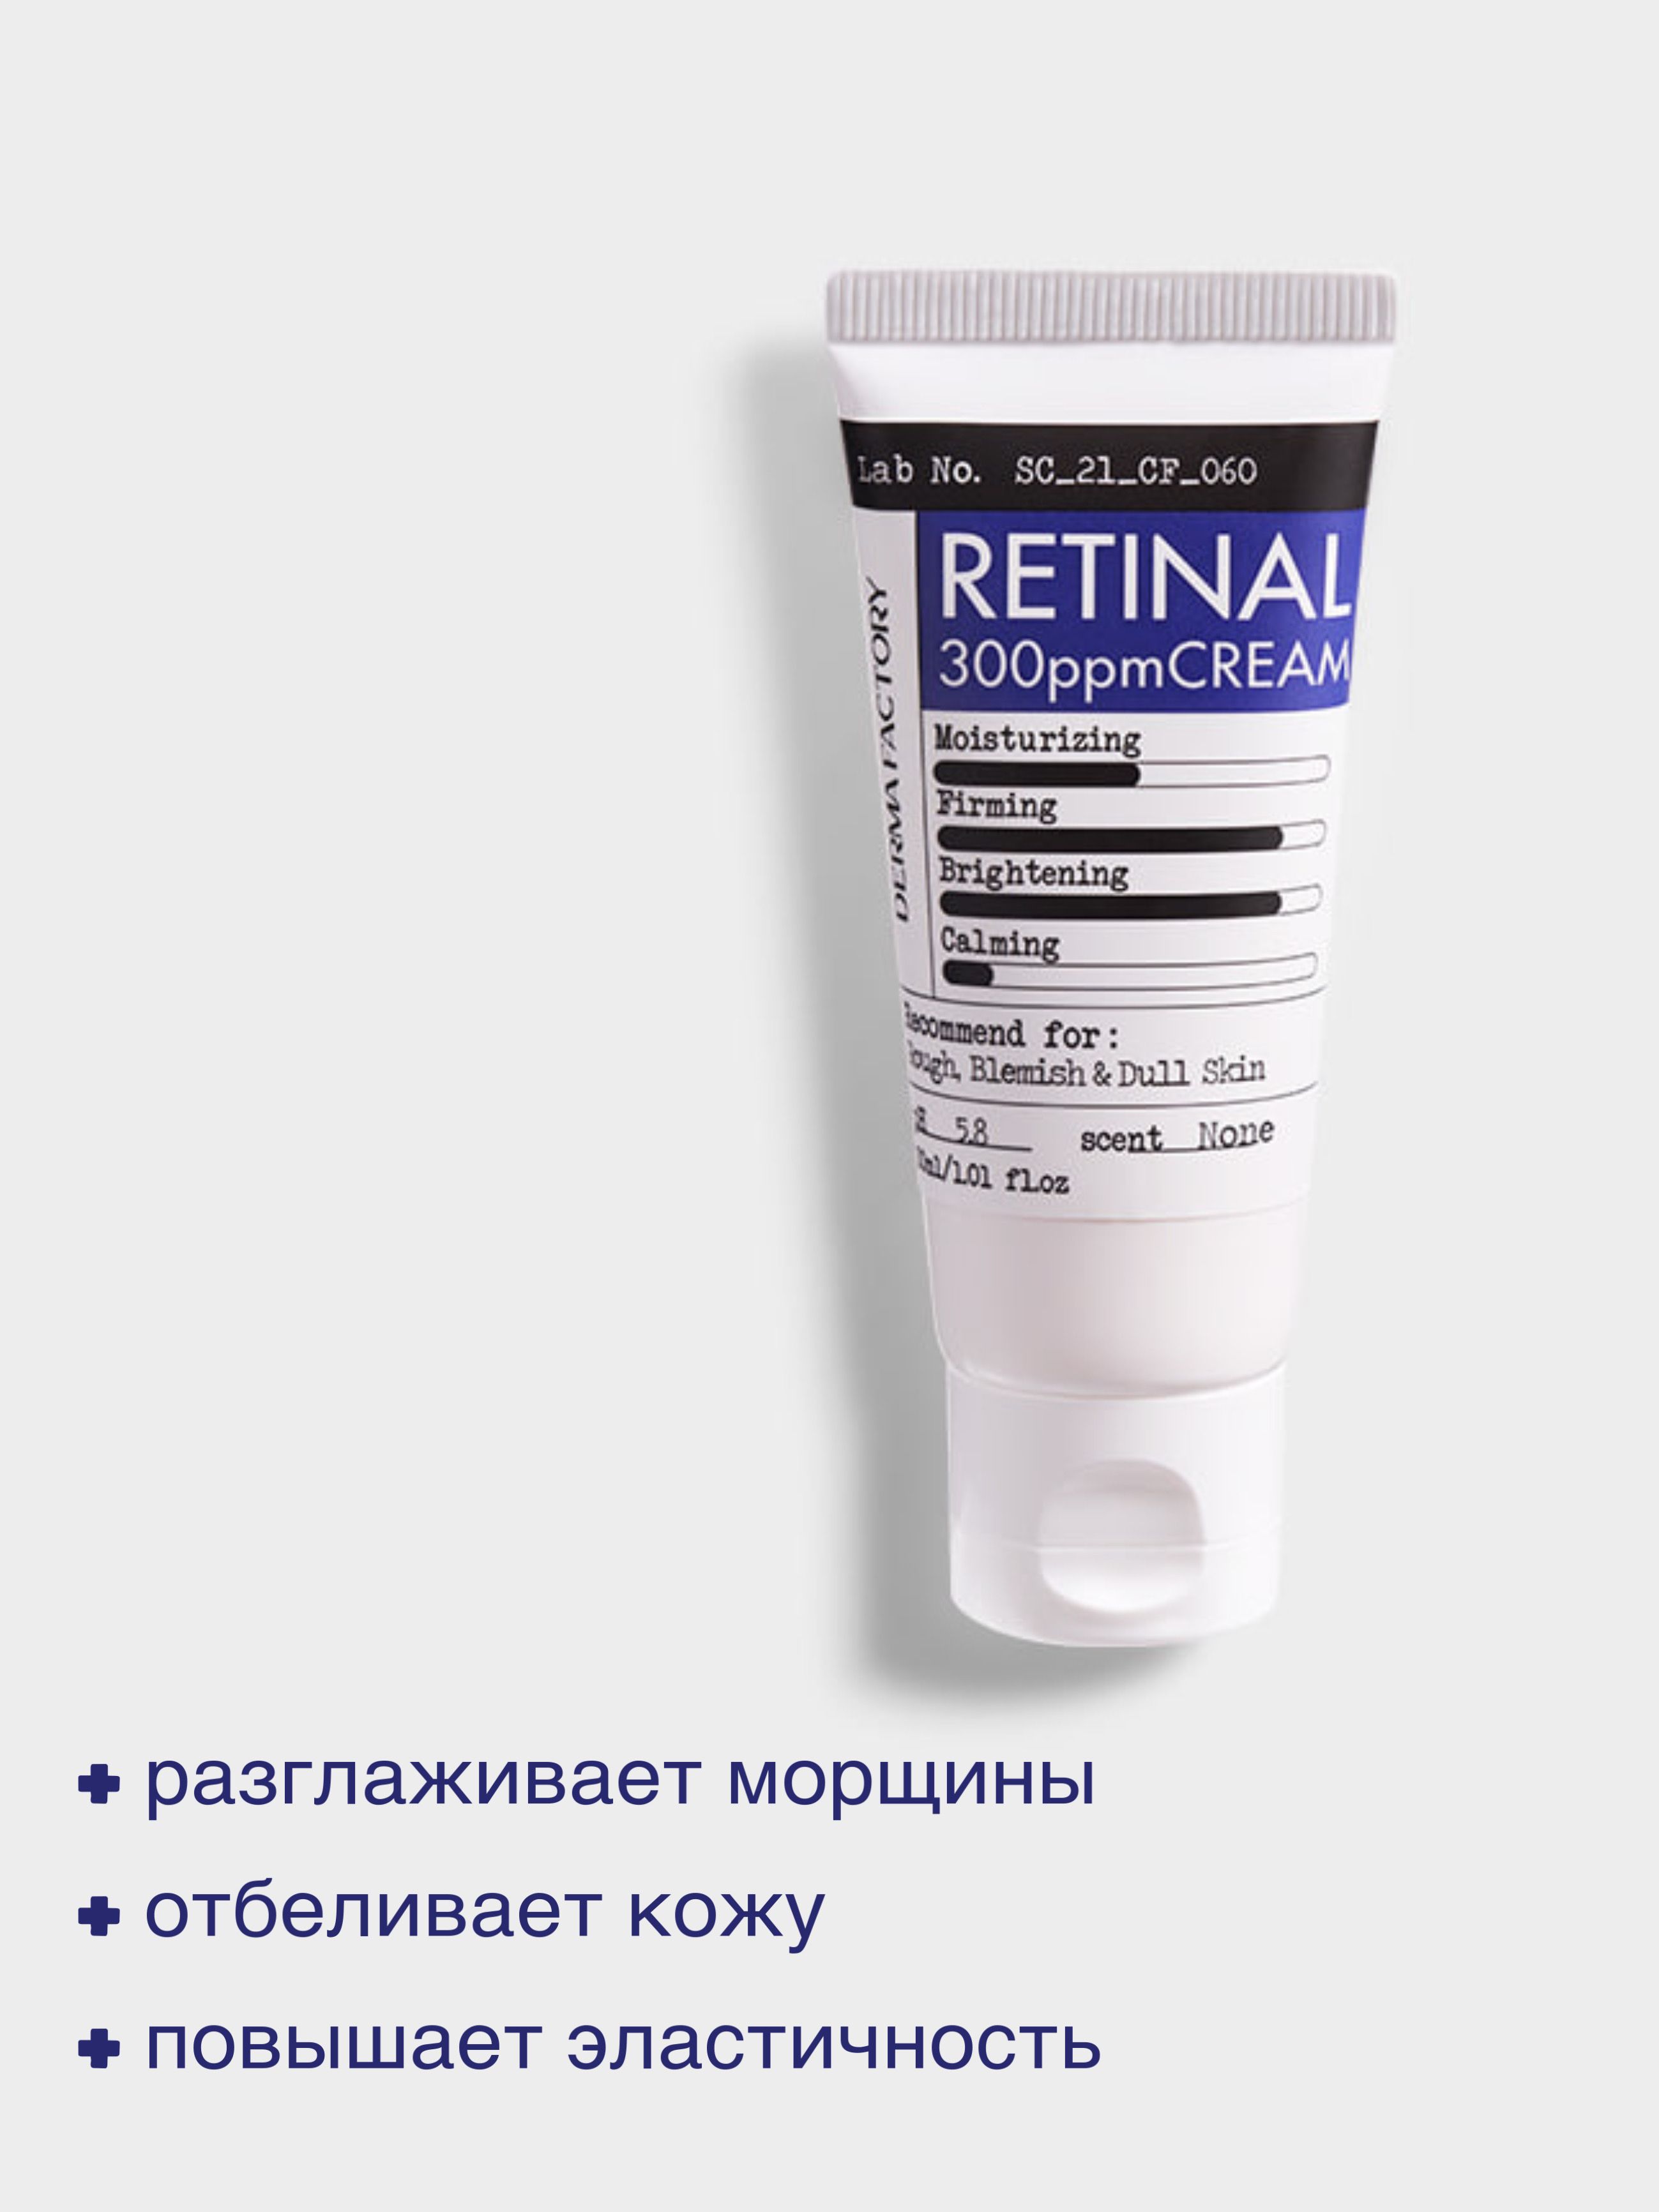 Derma Factory Крем для лица укрепляющий с ретиналом - Retinal 300ppm cream, 30мл.jpeg